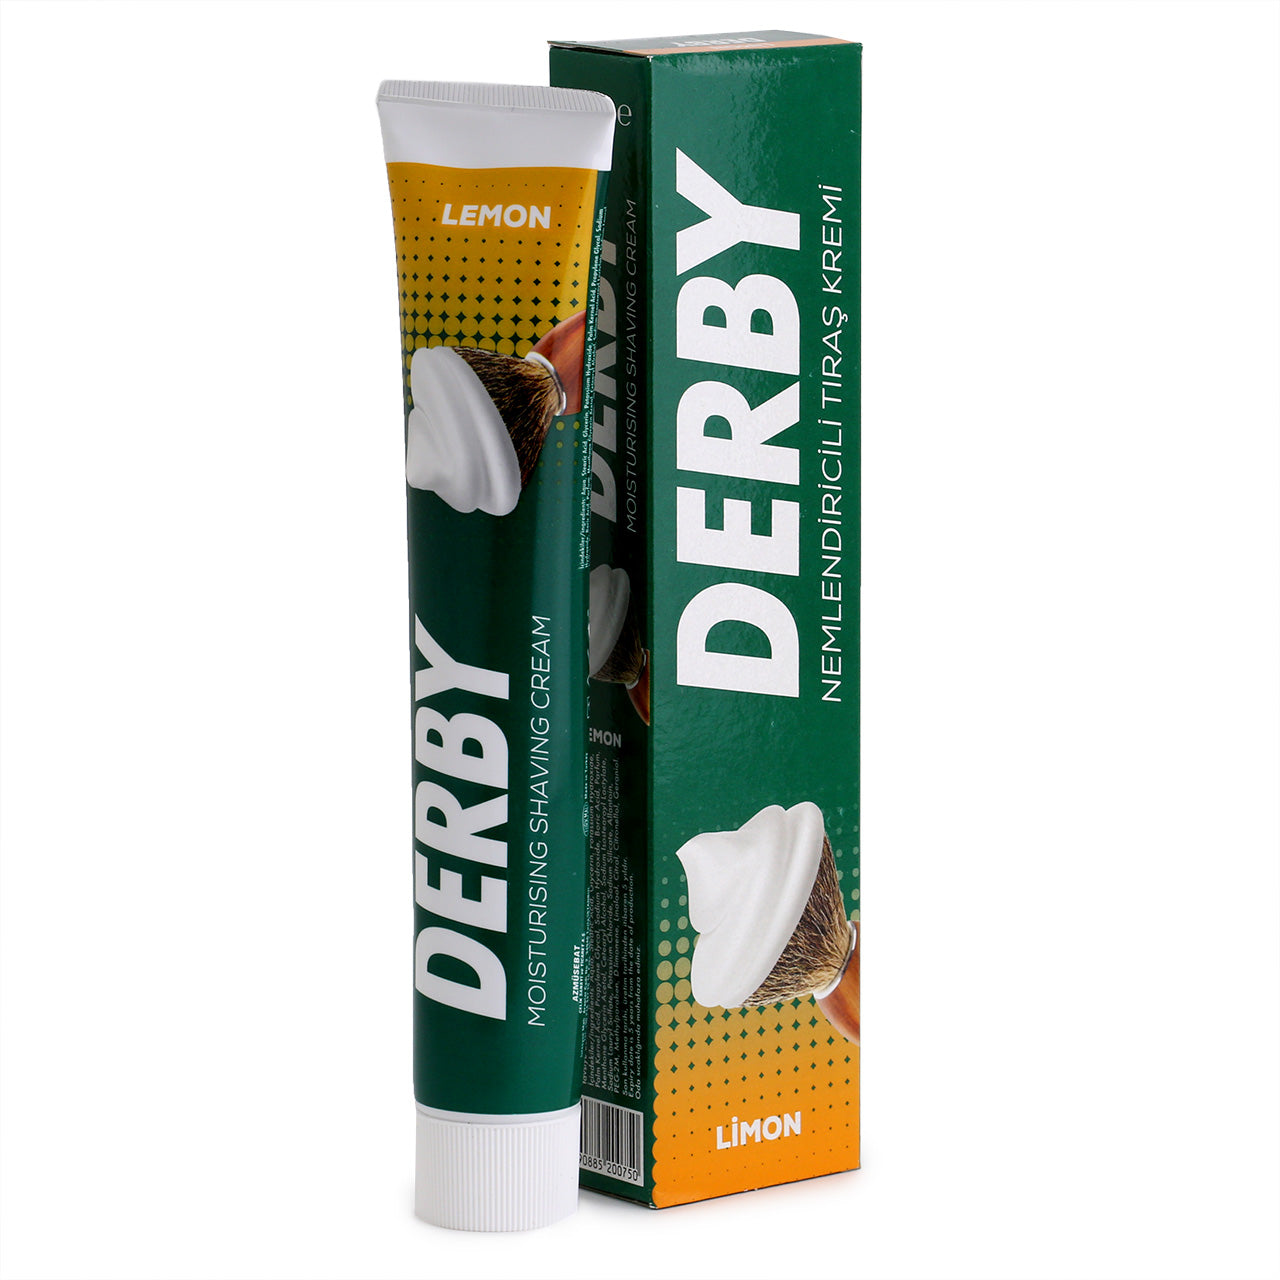 Derby Shaving Cream 100ml, Lemon